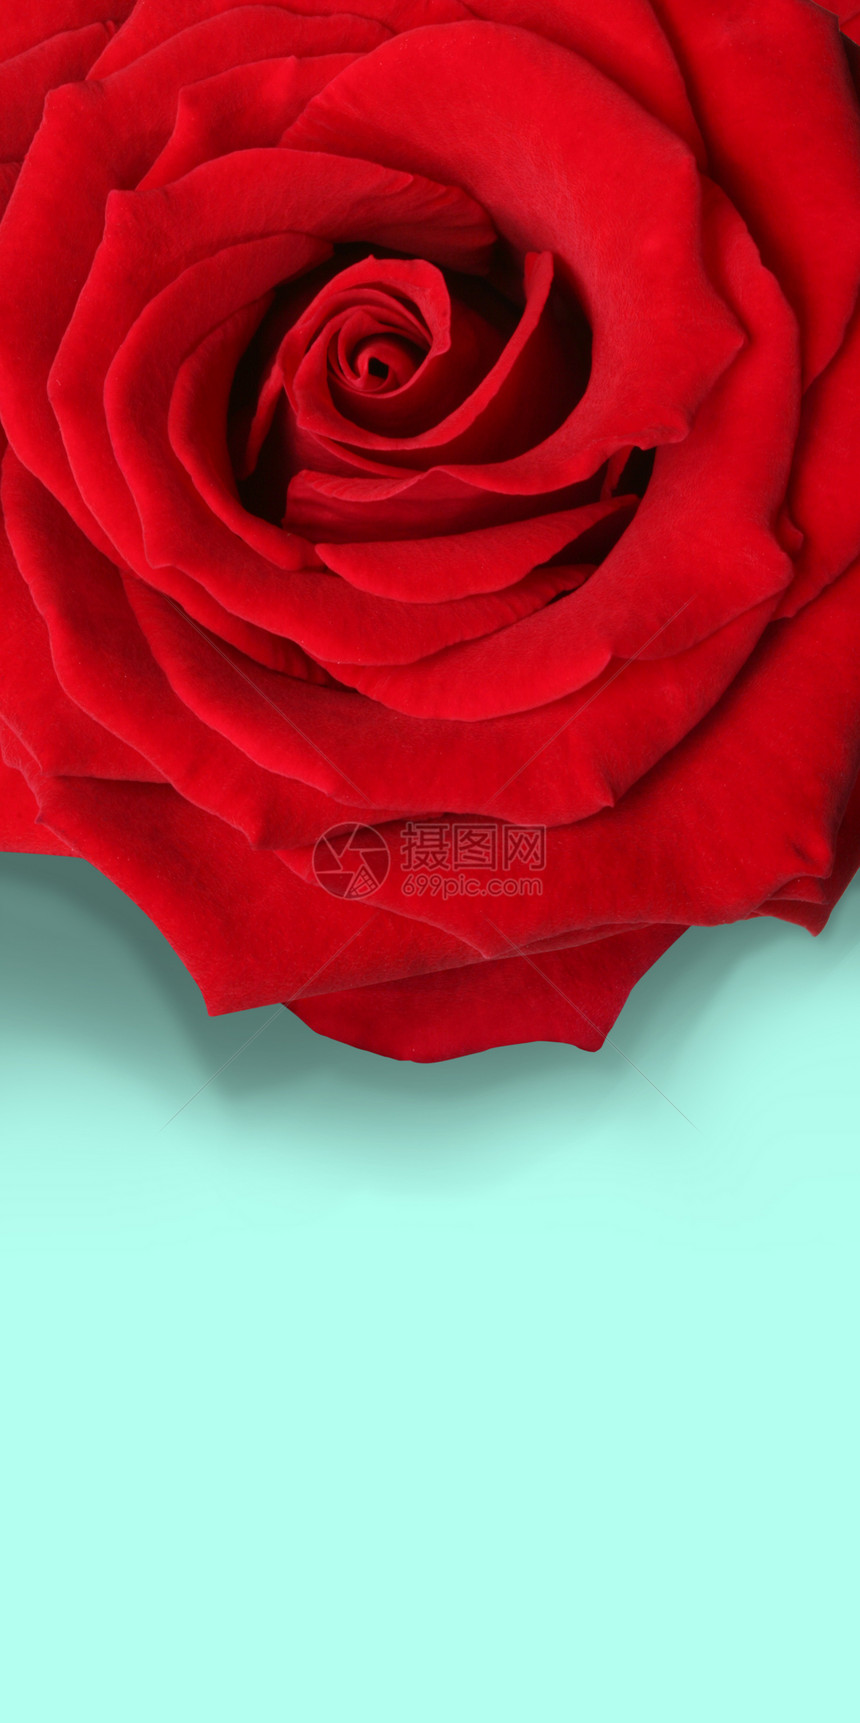 大红玫瑰花朵宏观红色踏板图片